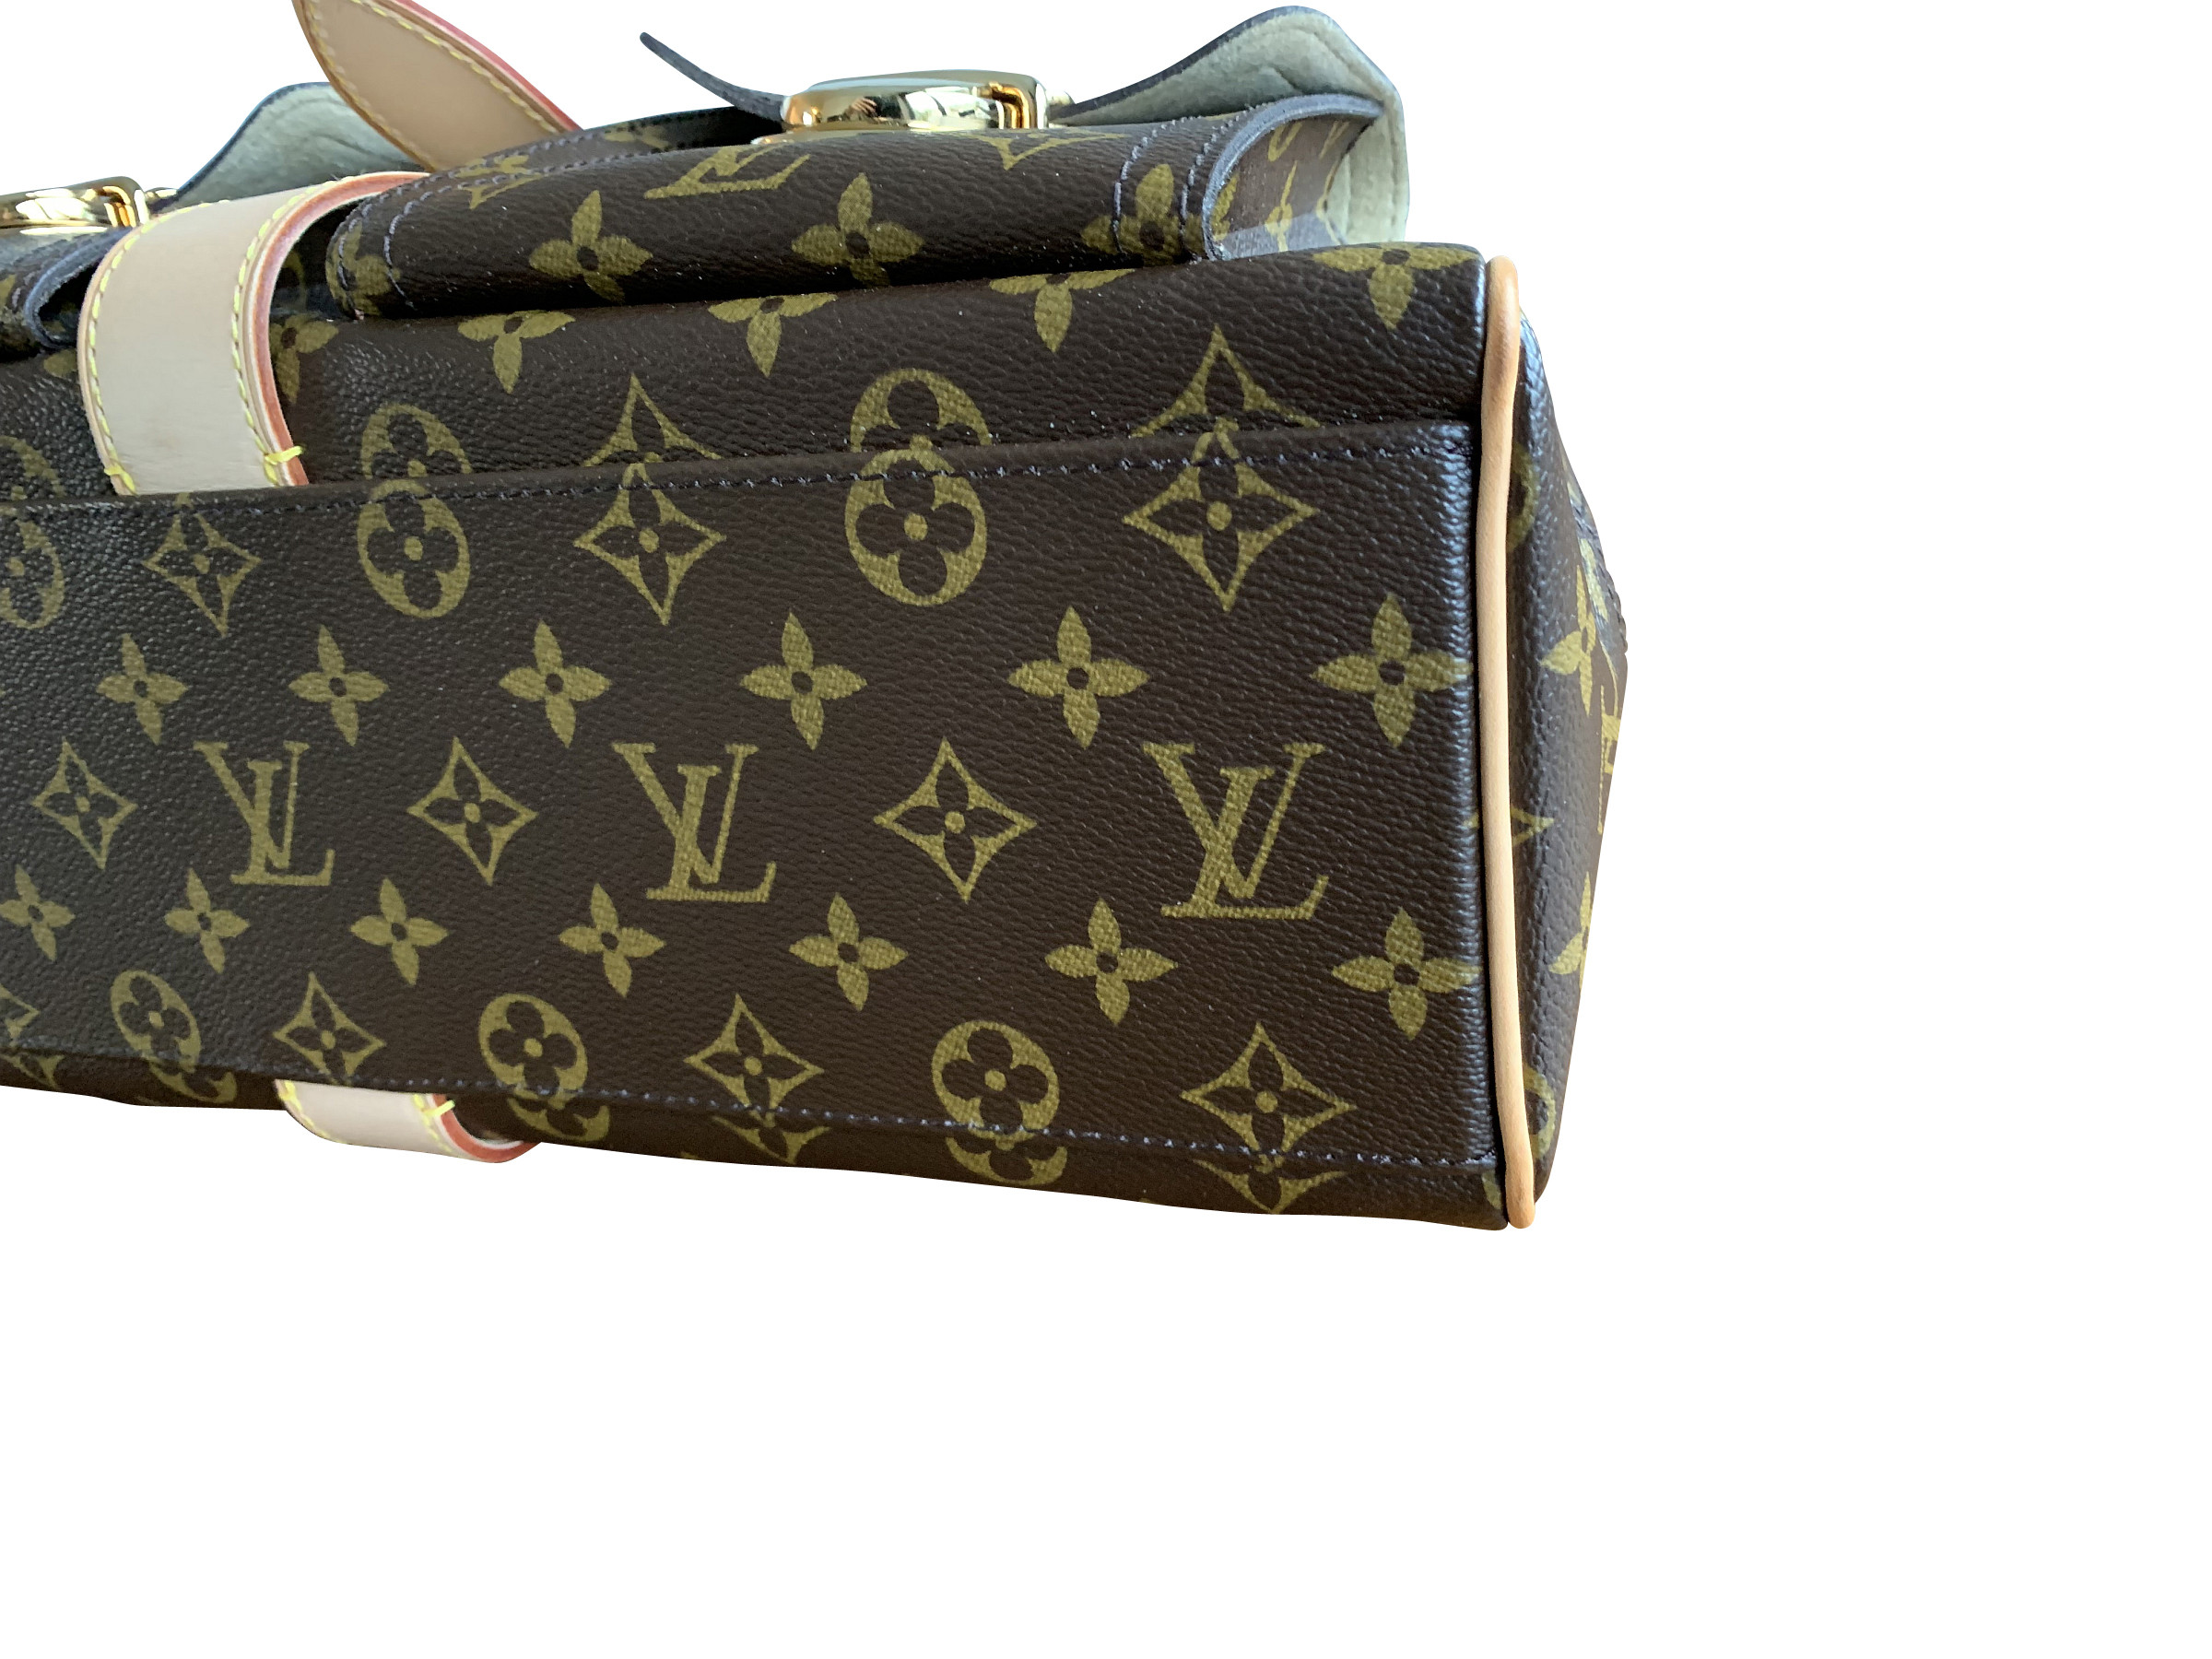 VERKAUFT - Louis Vuitton Tasche Handtasche Manhattan GM Monogram